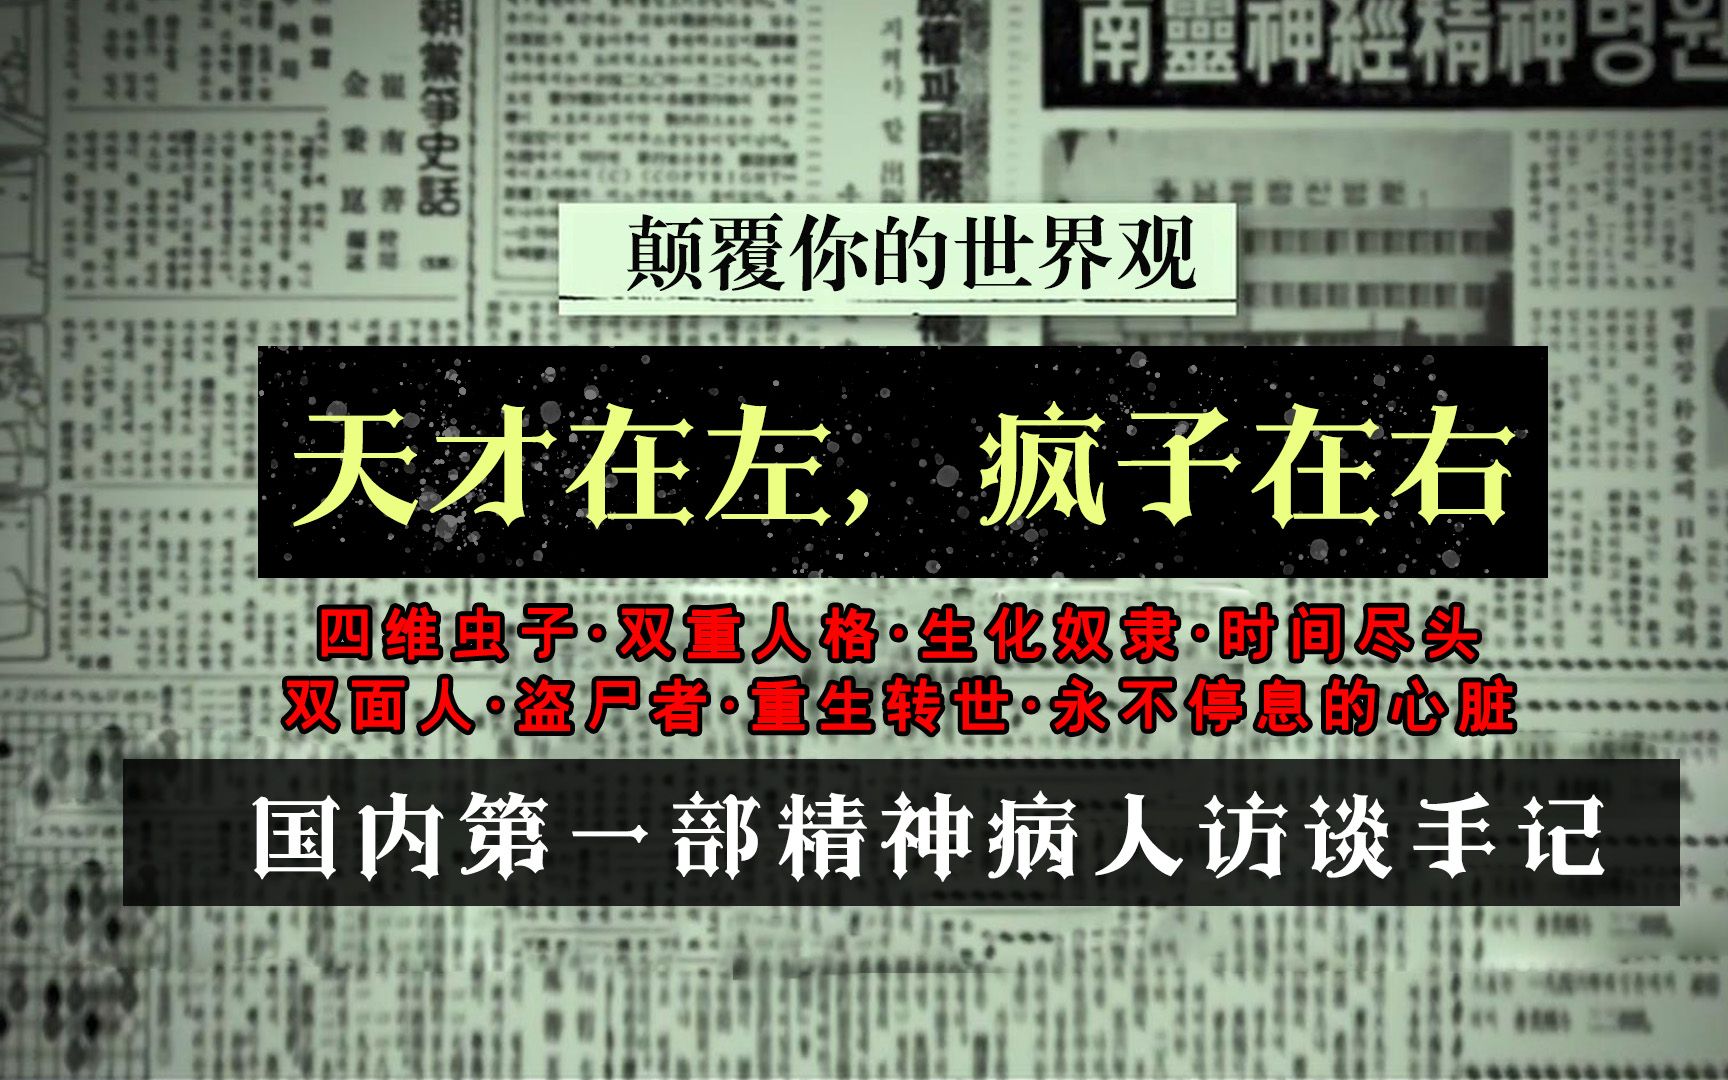 《天才在左，疯子在右》：首次揭露中国精神病患者的采访实录